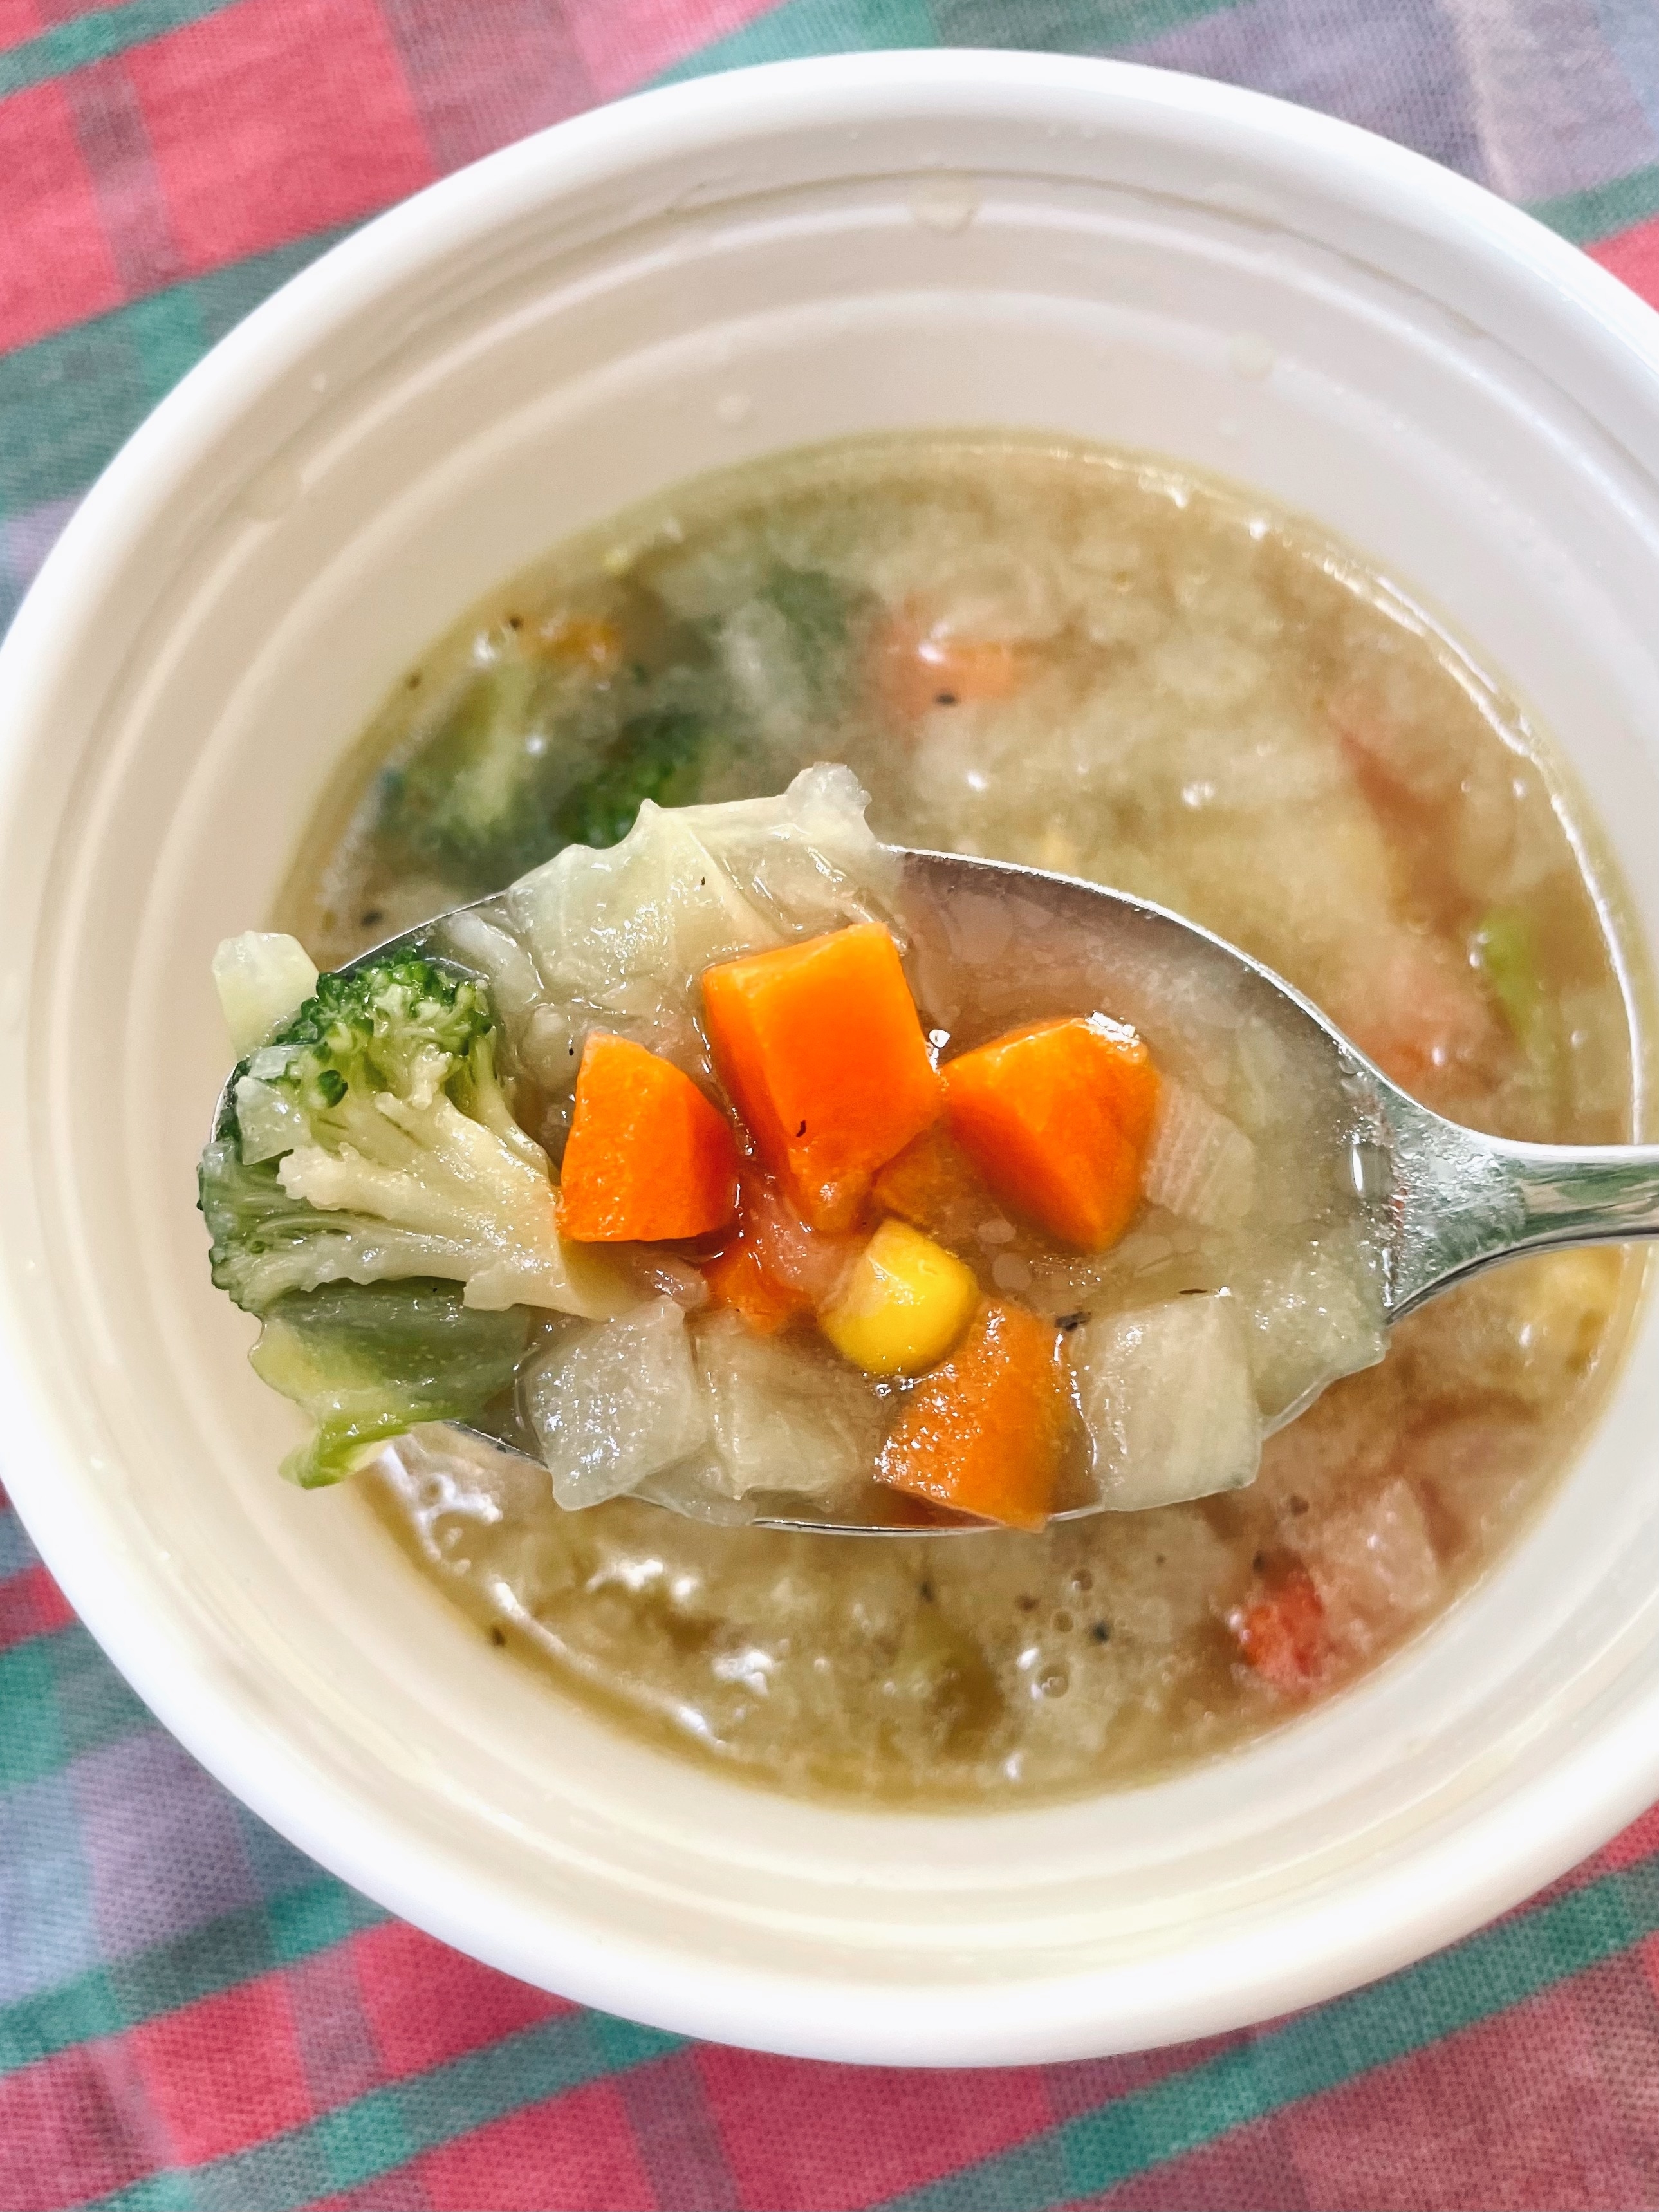 ファミマのオススメスープ「1/3日分野菜使用コンソメスープ」